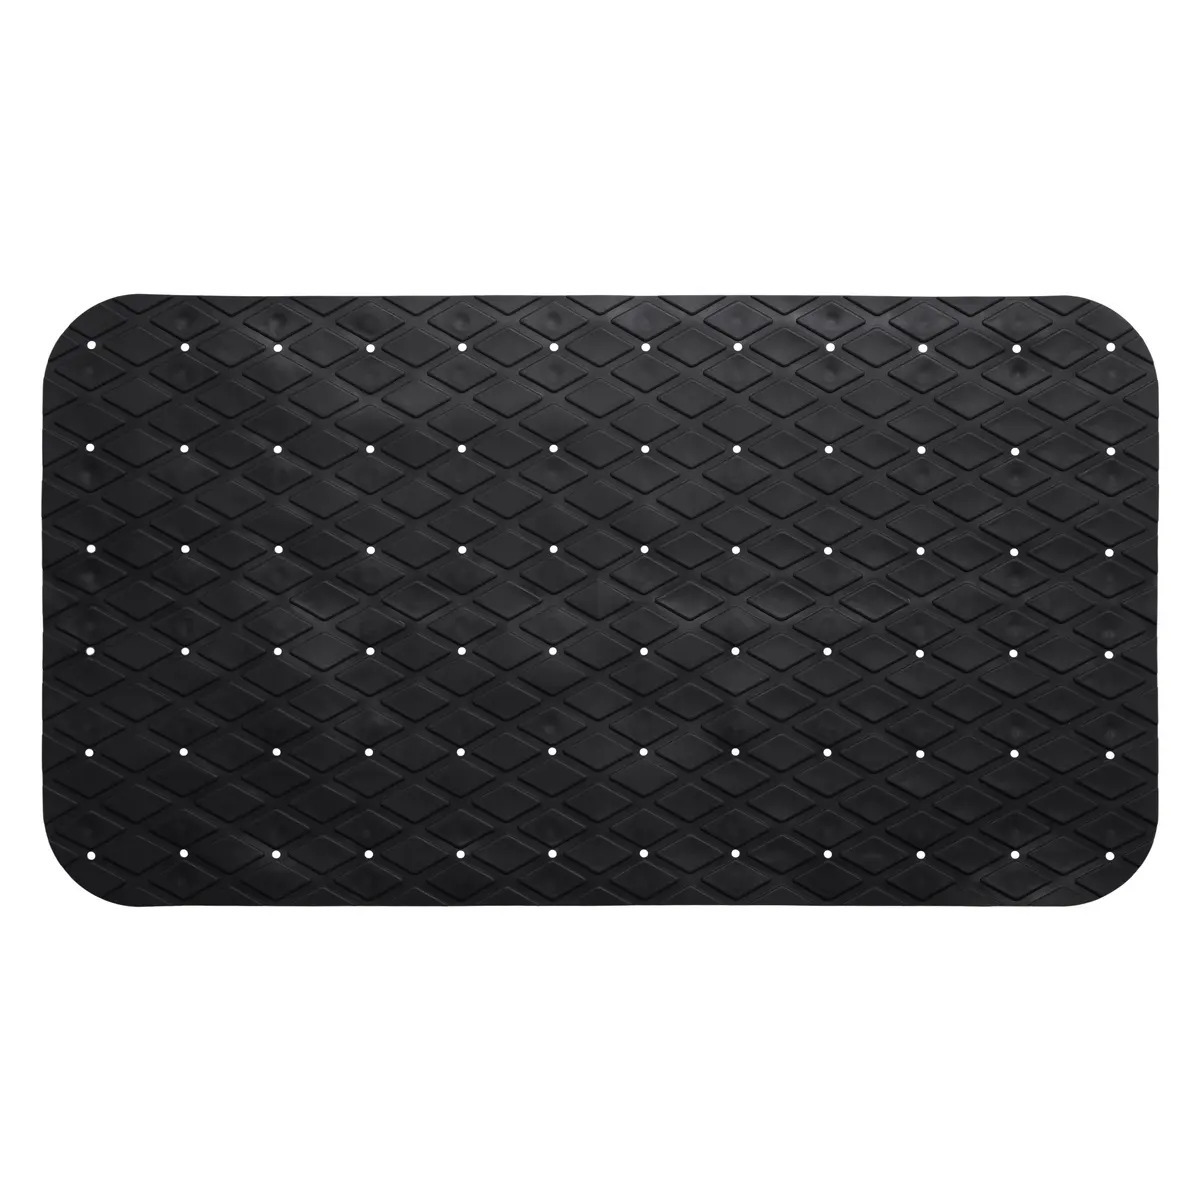 5five Badkamer/douche/bad - anti slip mat - rubber - voor op de vloer - zwart - 70 x 35 cm -